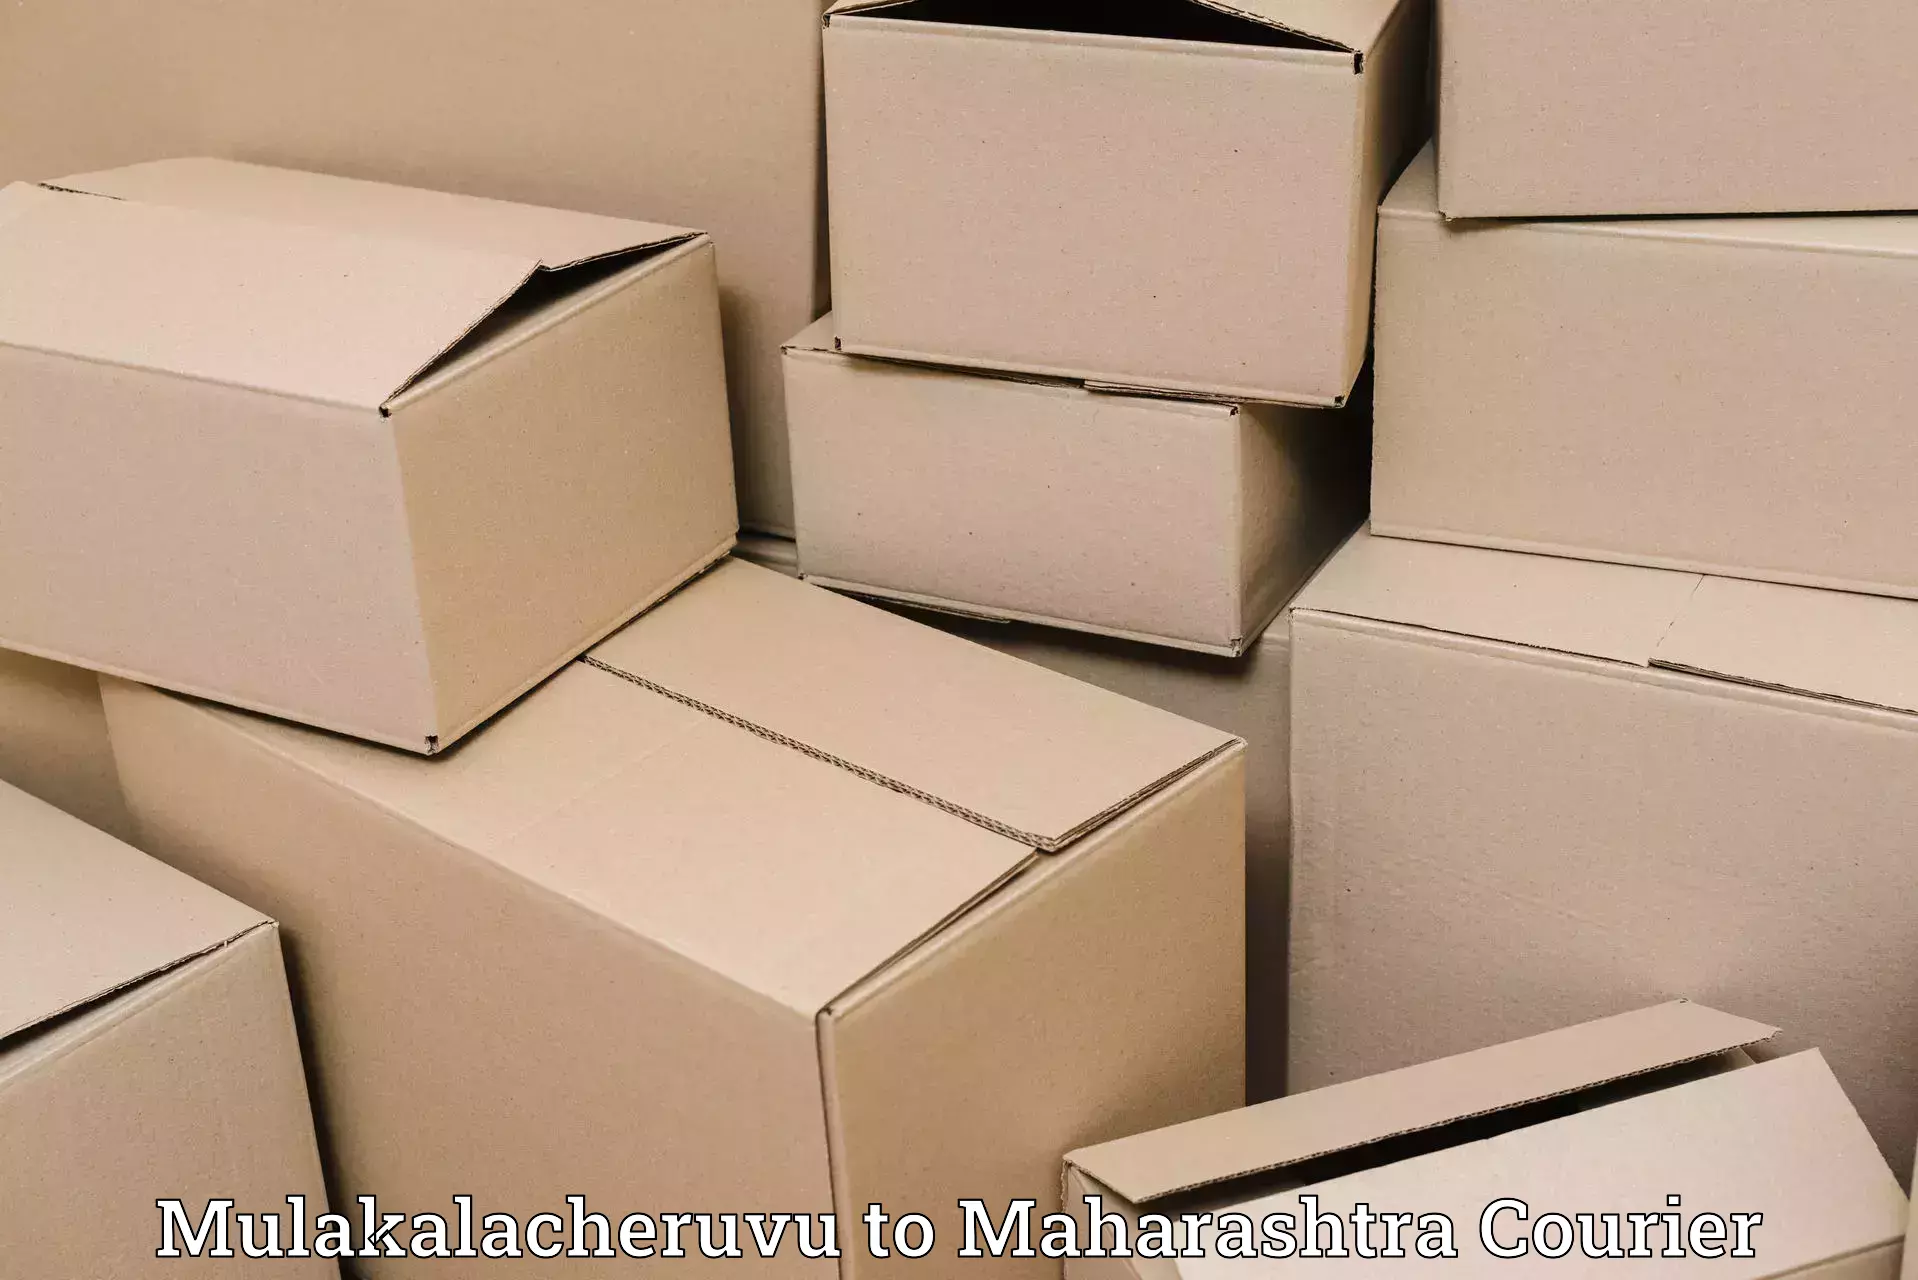 Premium courier solutions Mulakalacheruvu to Ahmedpur